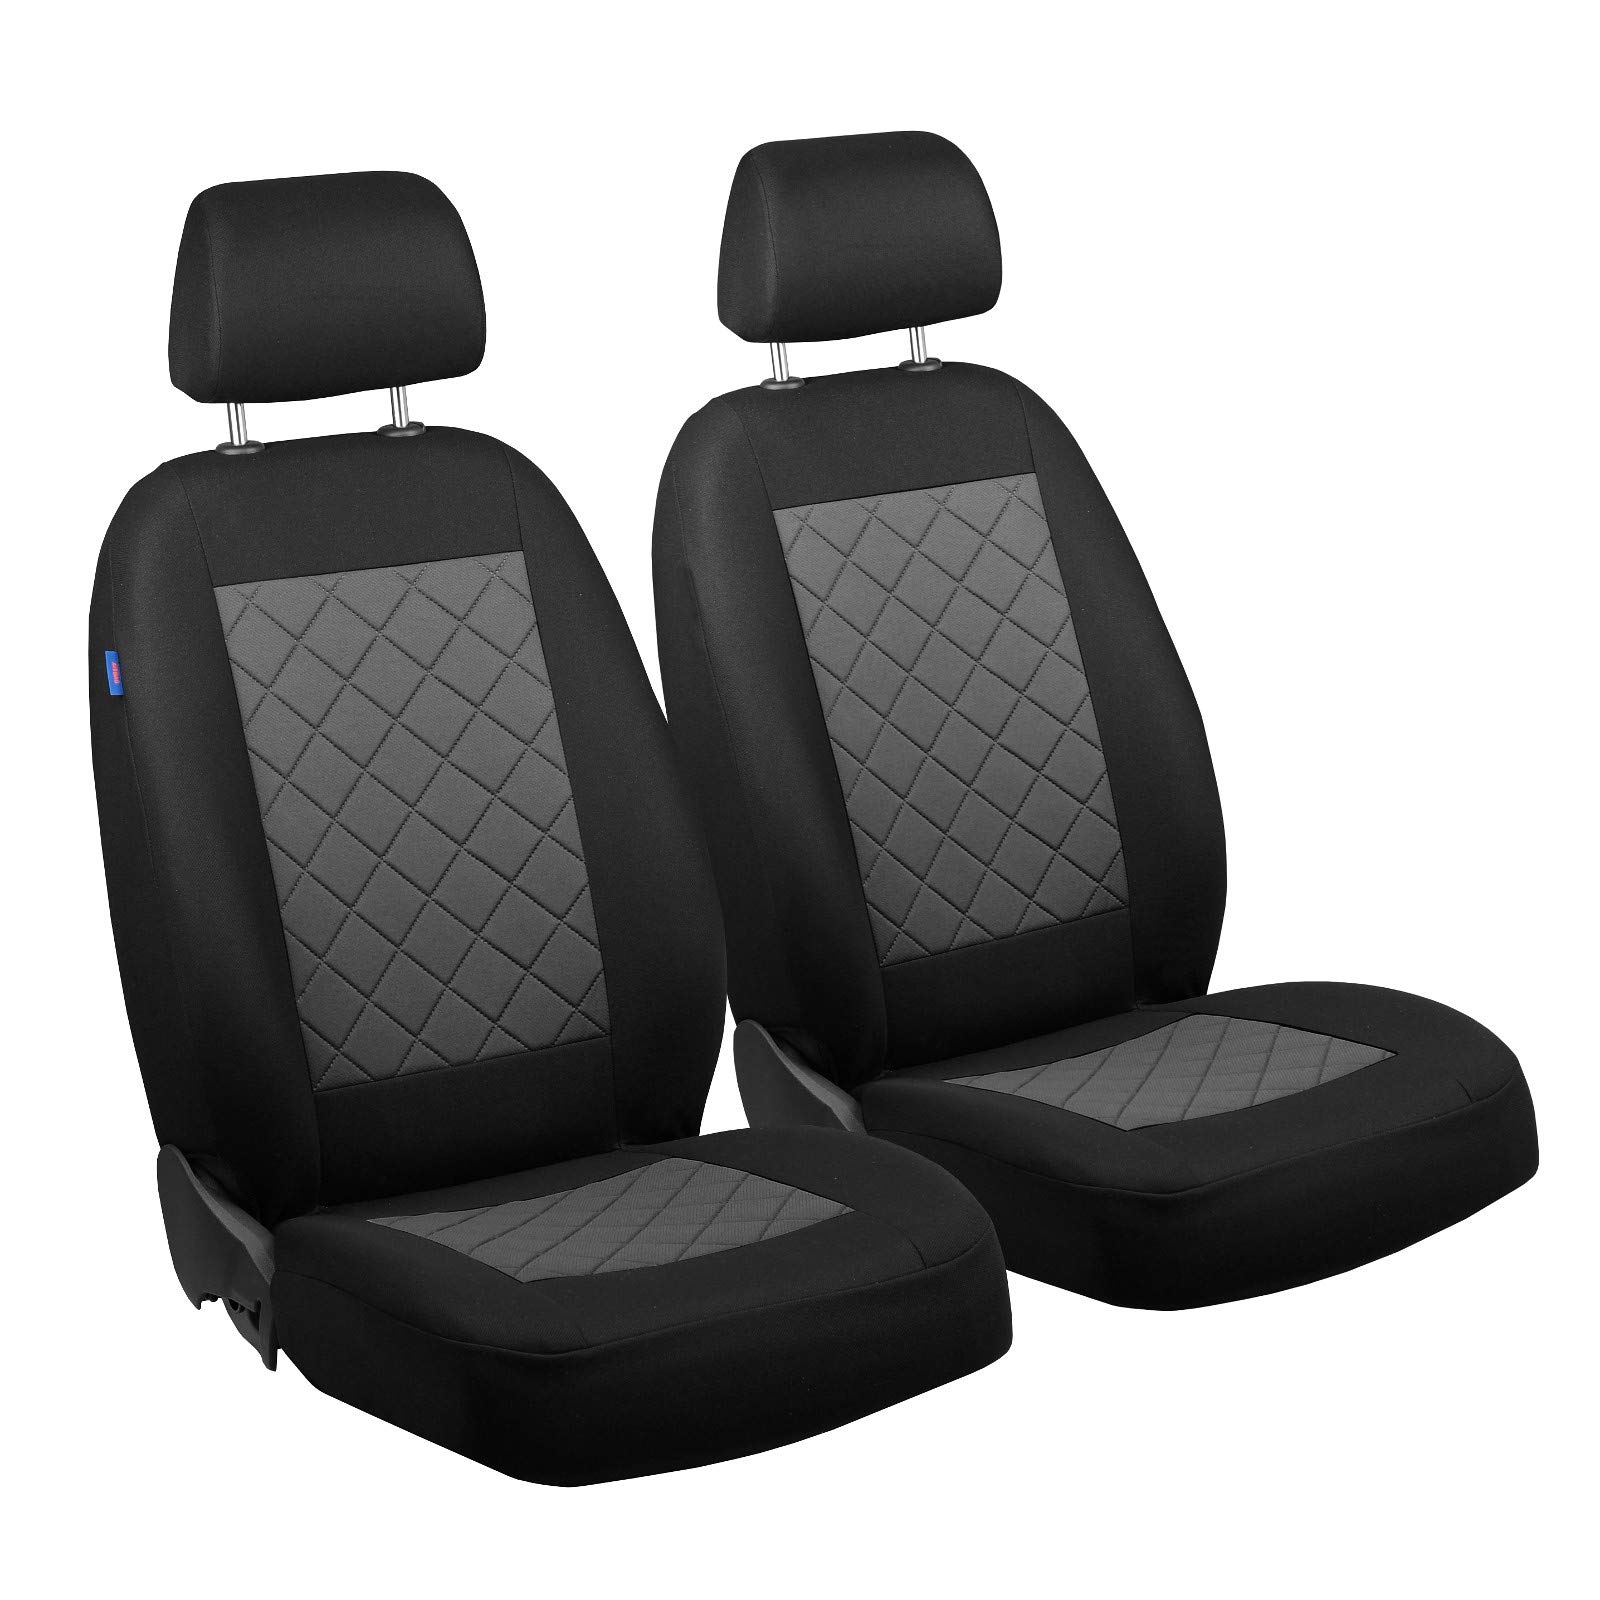 Zakschneider ROOMSTER Vorne Sitzbezüge - für Fahrer und Beifahrer - Farbe Premium Schwarz-grau von Zakschneider